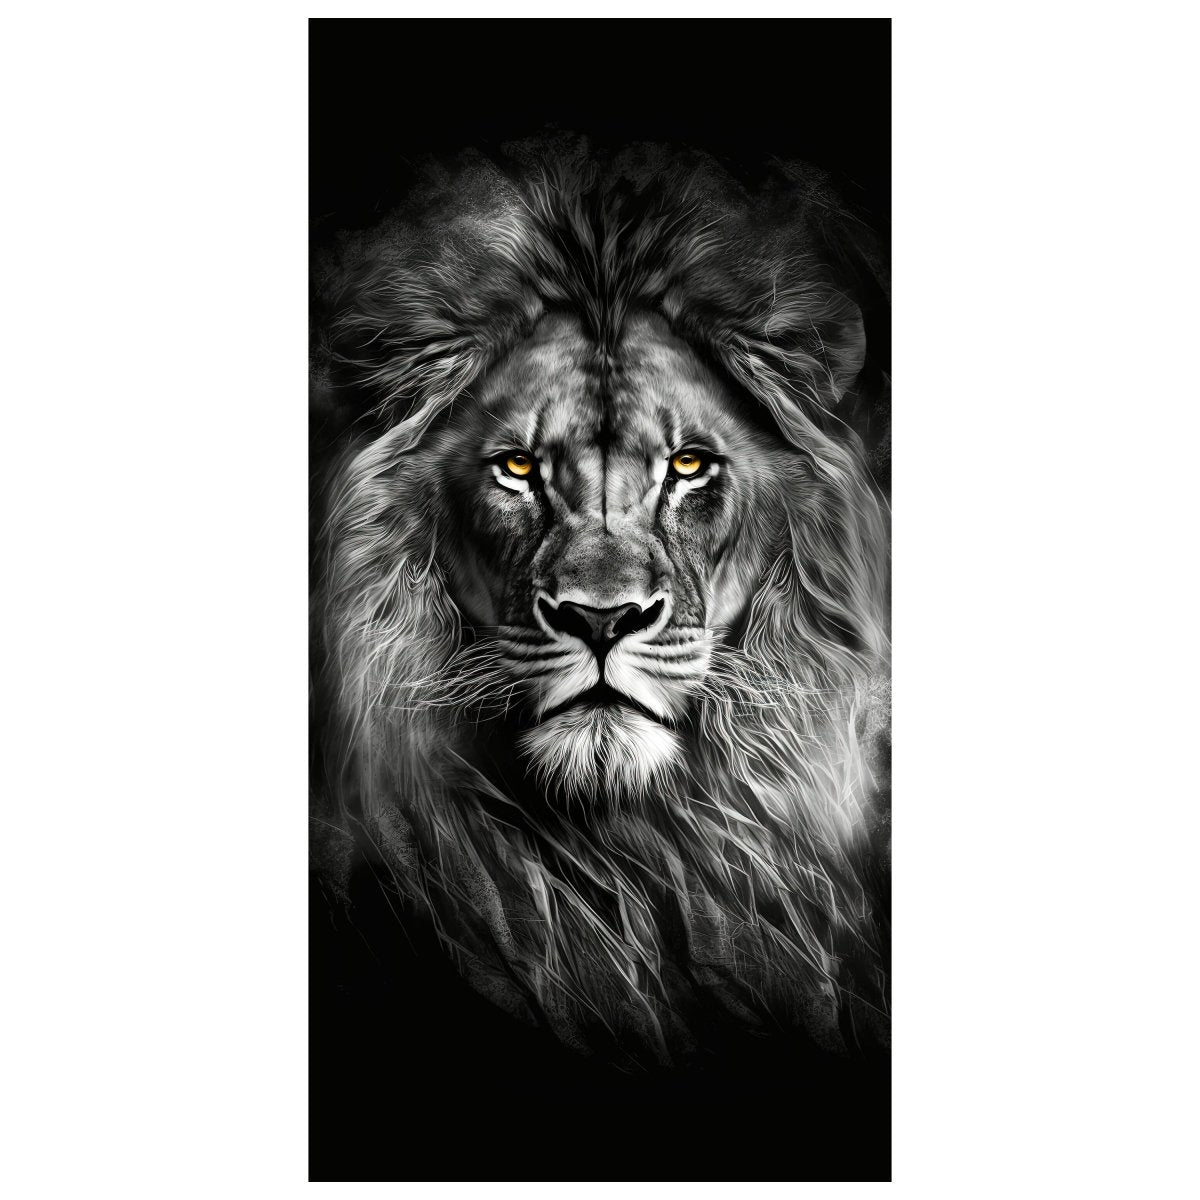 Türtapete Löwe, Schwarz, Weiß M1450 - Bild 2